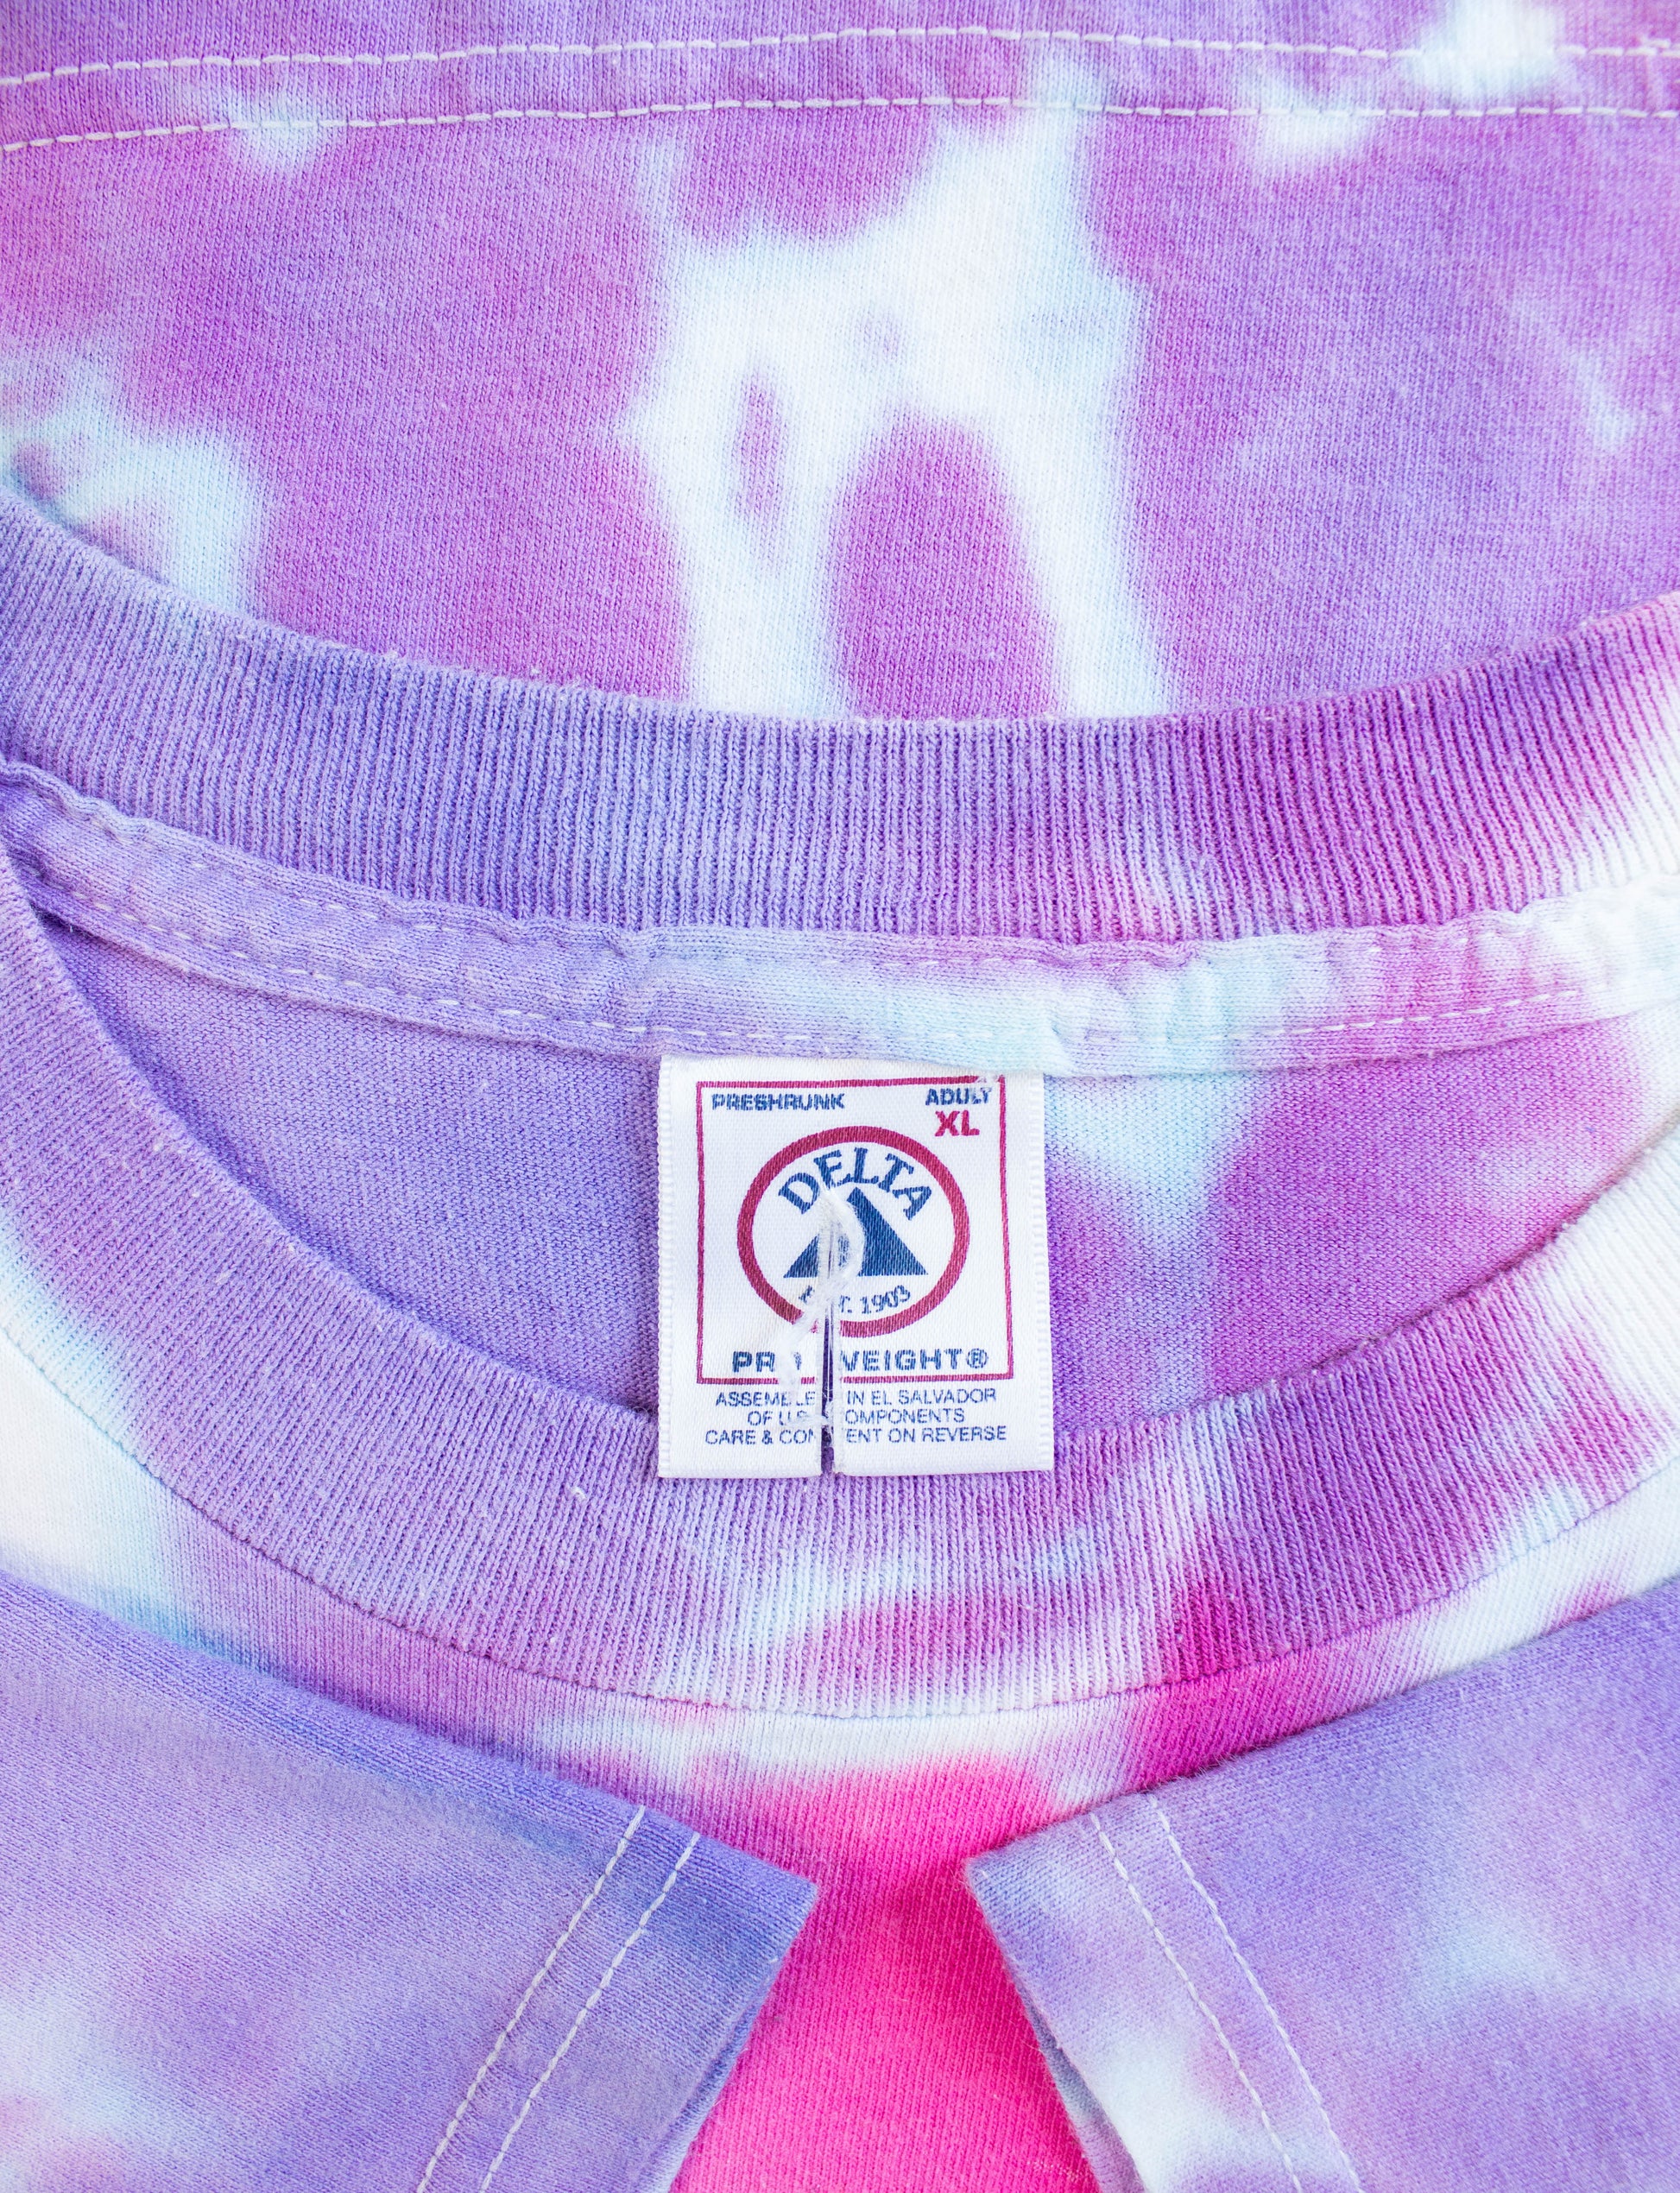 Vintage Britney Spears Concert T Shirt 2000 Tour Purple Tie Dye Parking Lot Bootleg XL